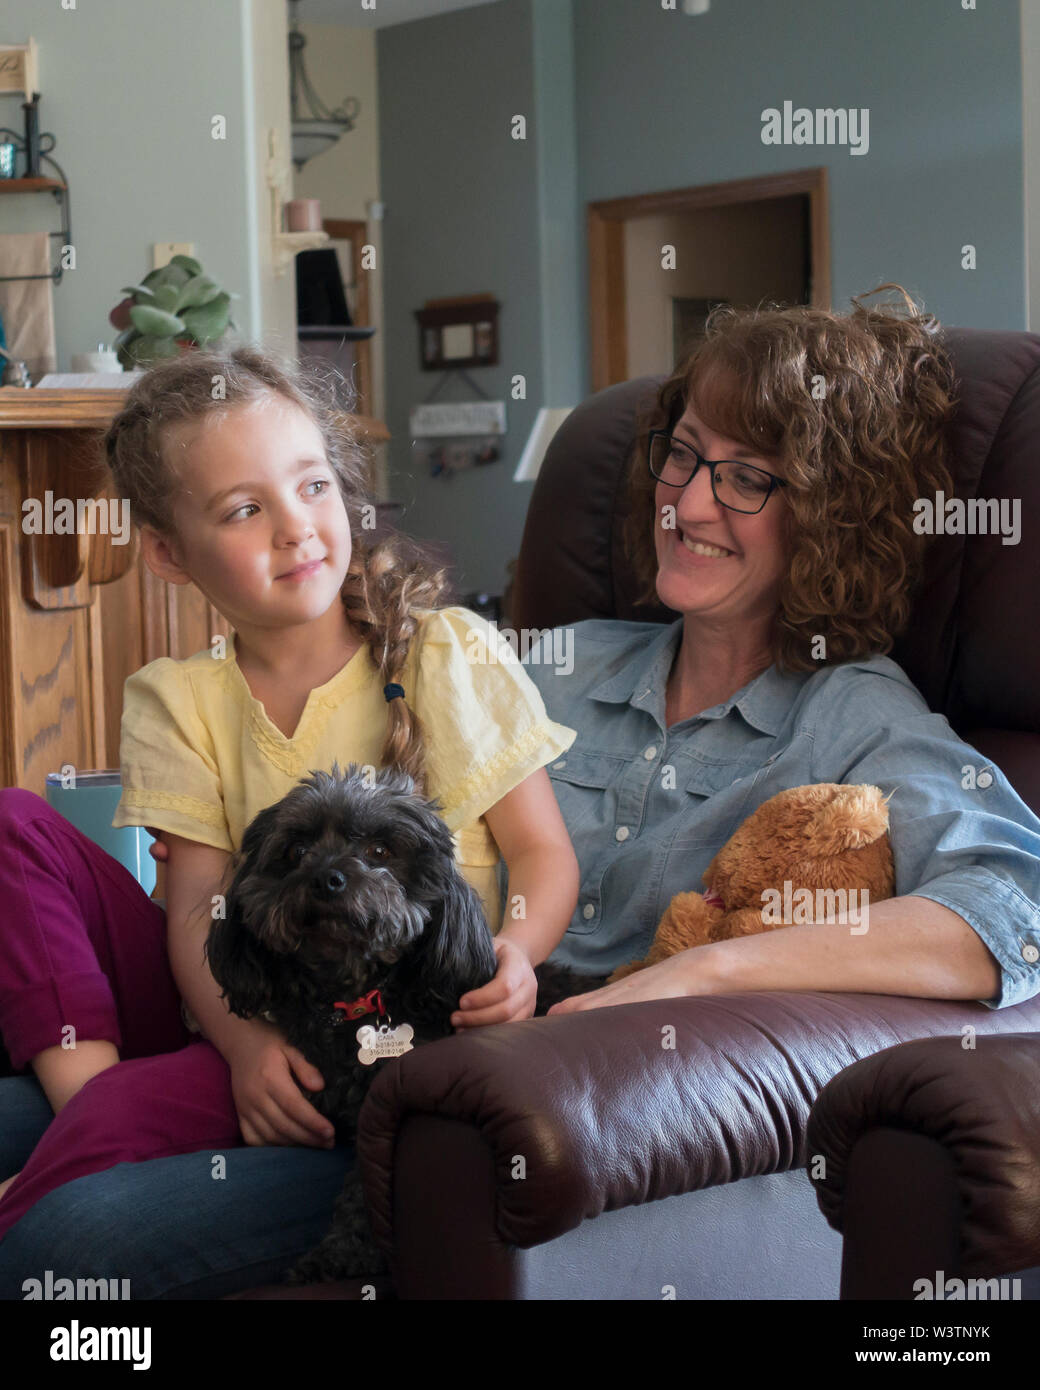 A smiling woman est titulaire d'une fille de cinq ans sur ses genoux alors que l'enfant souriant a son bras autour d'un chien. Unposed de droit. USA Banque D'Images